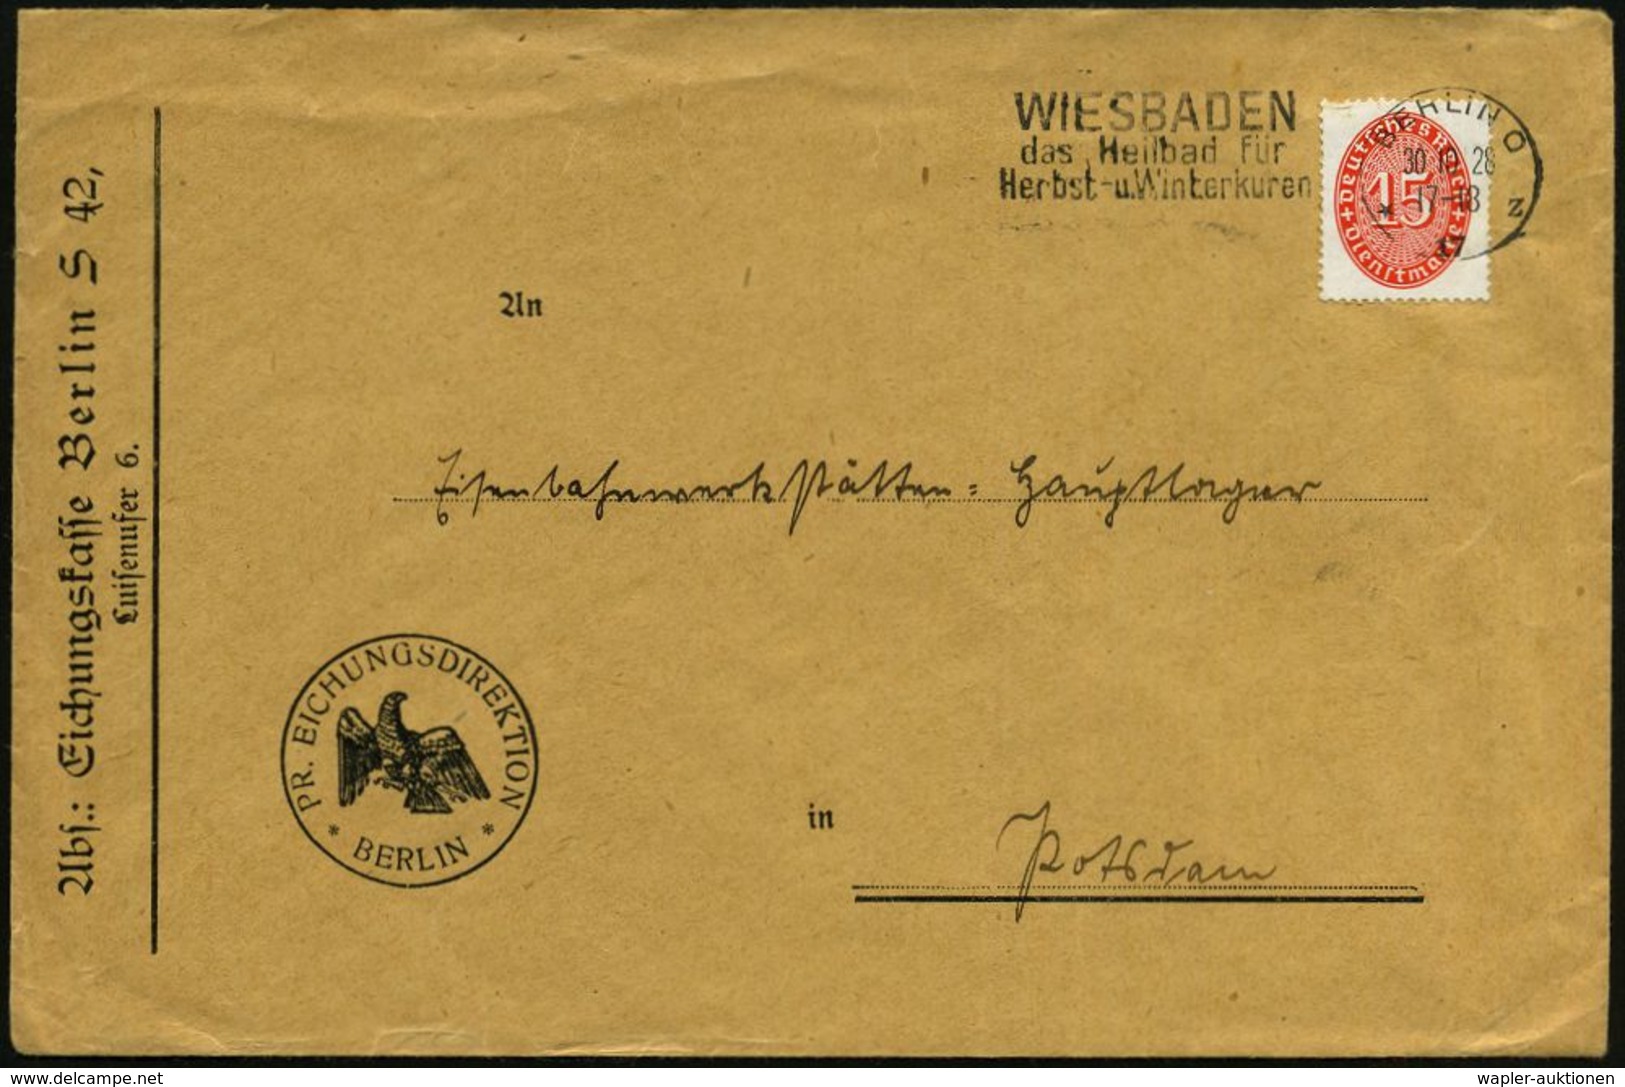 WIEGEN & MESSEN / WAAGE / METER : Berlin S 42 1928 (30.10.) Dienst-Bf.: PR. EICHUNGSDIREKTION/Eichungskasse Berlin (preu - Ohne Zuordnung